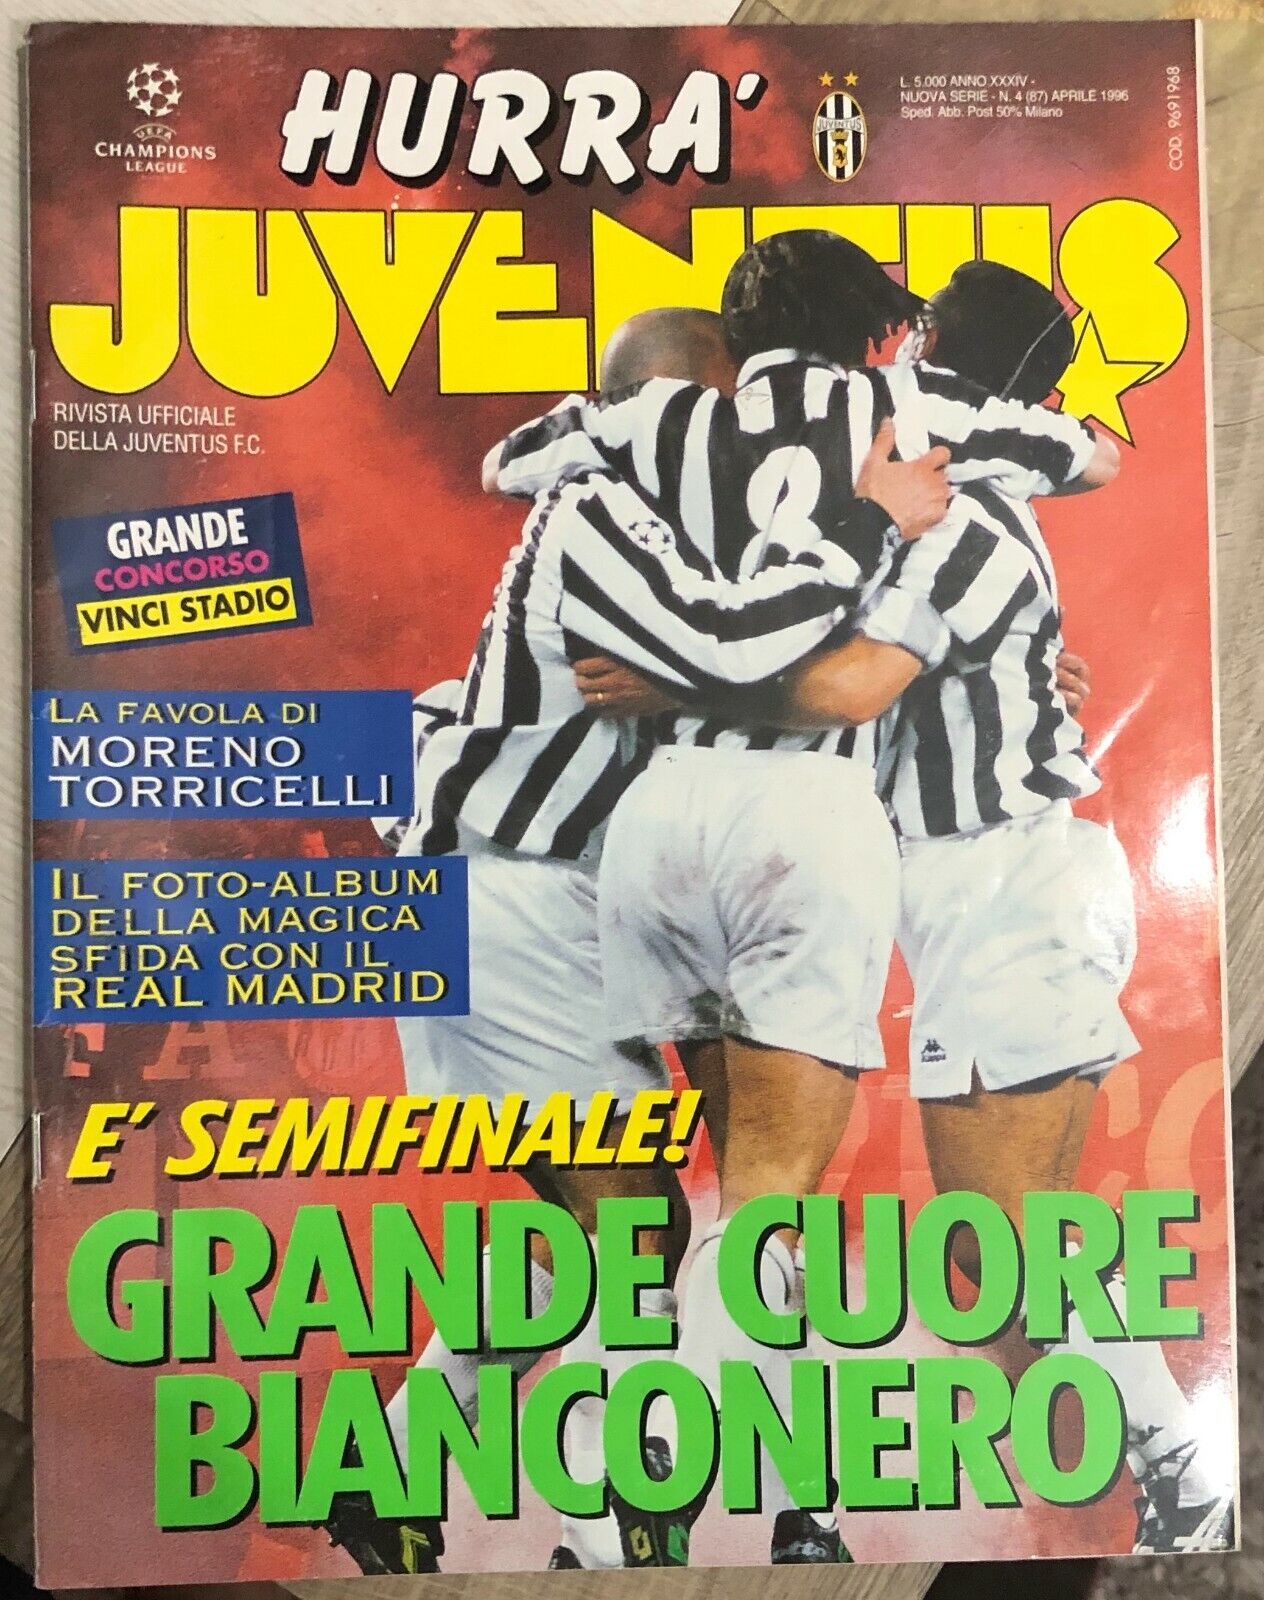 Hurr? Juventus n. 4/1996 di Aa.vv.,  1996,  Juventus F.c.